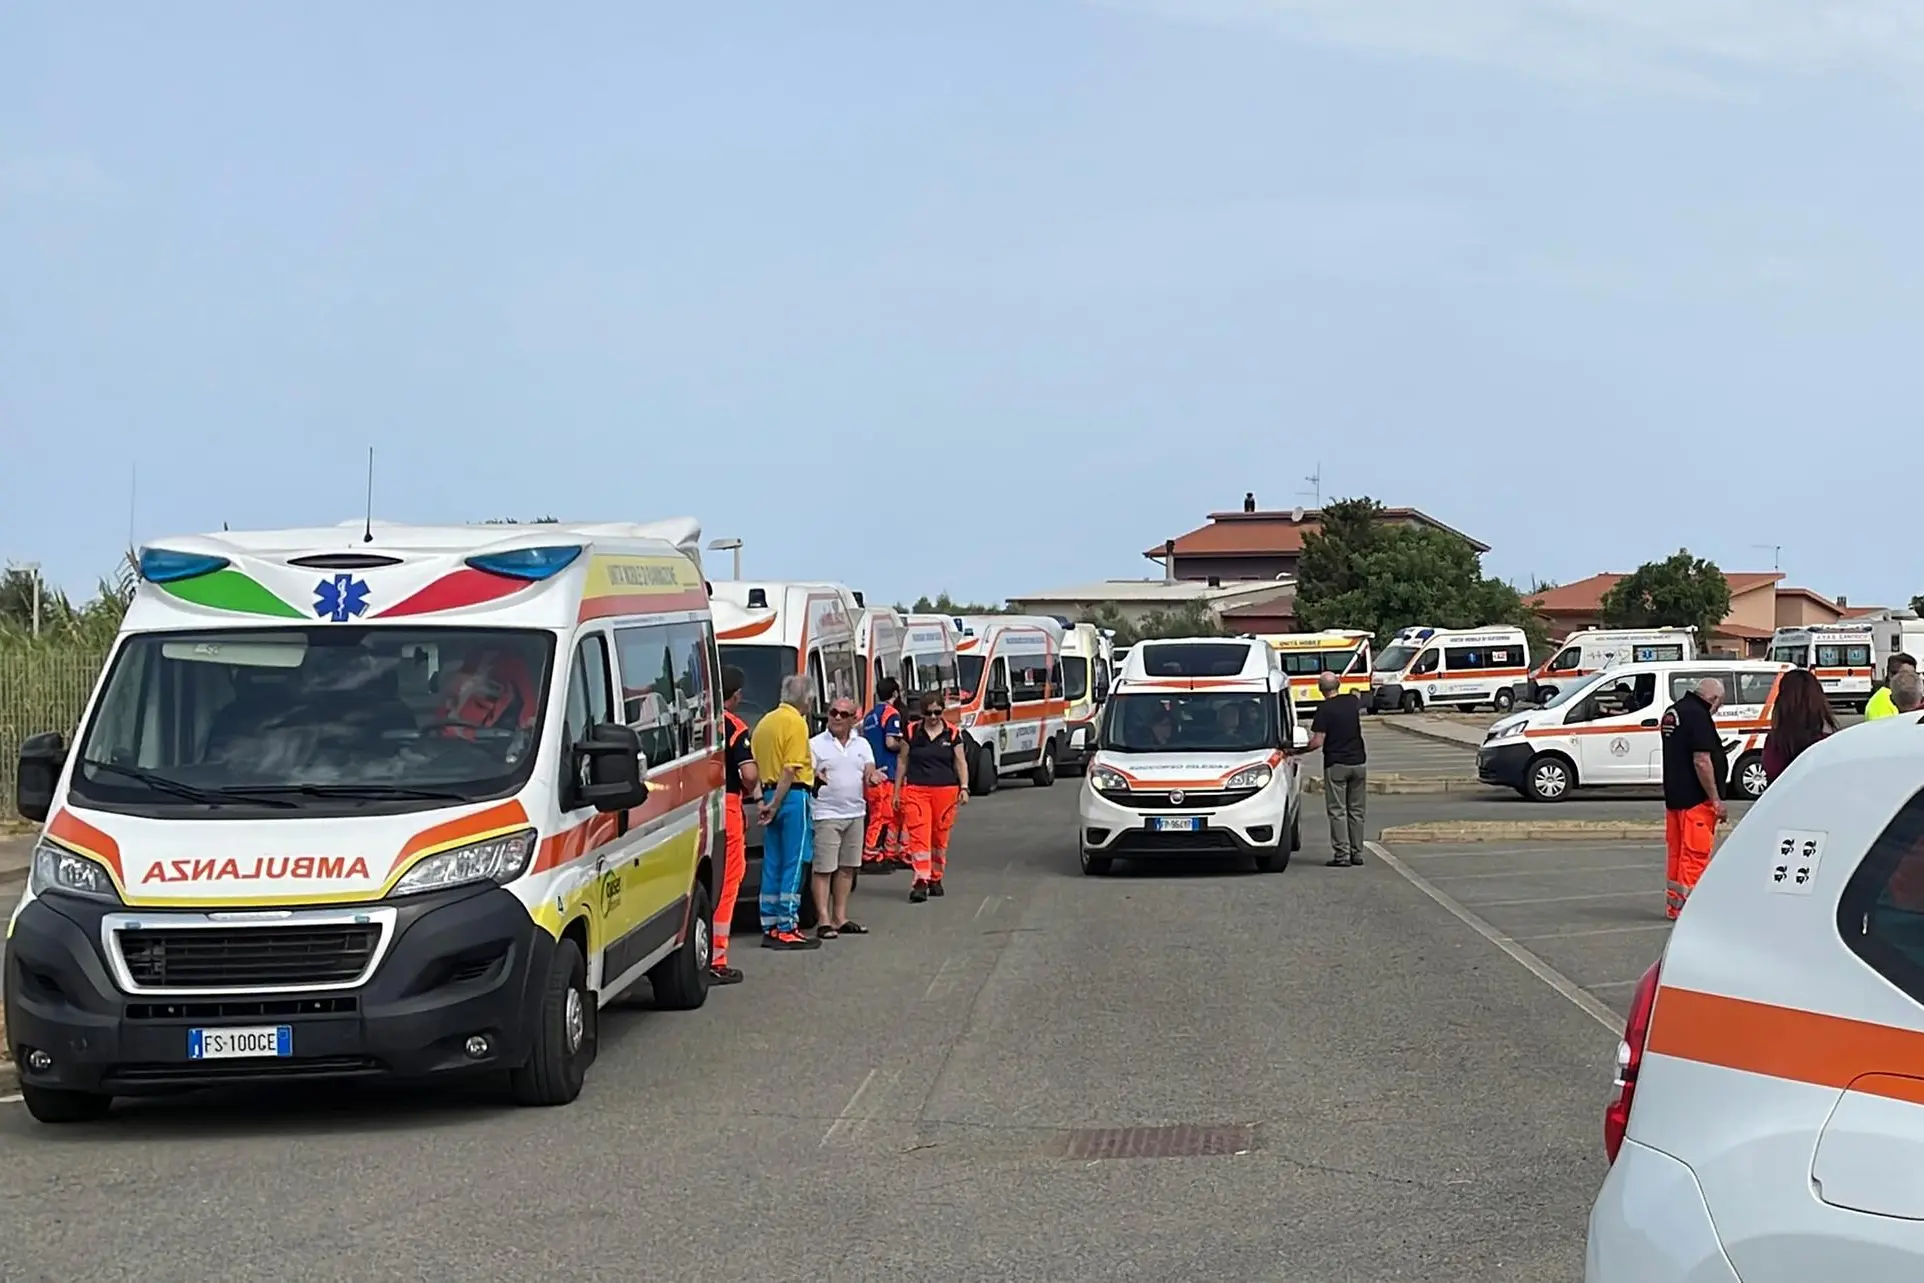 Le ambulanze nel parcheggio dell’ospedale Sirai (foto Fabio Murru)